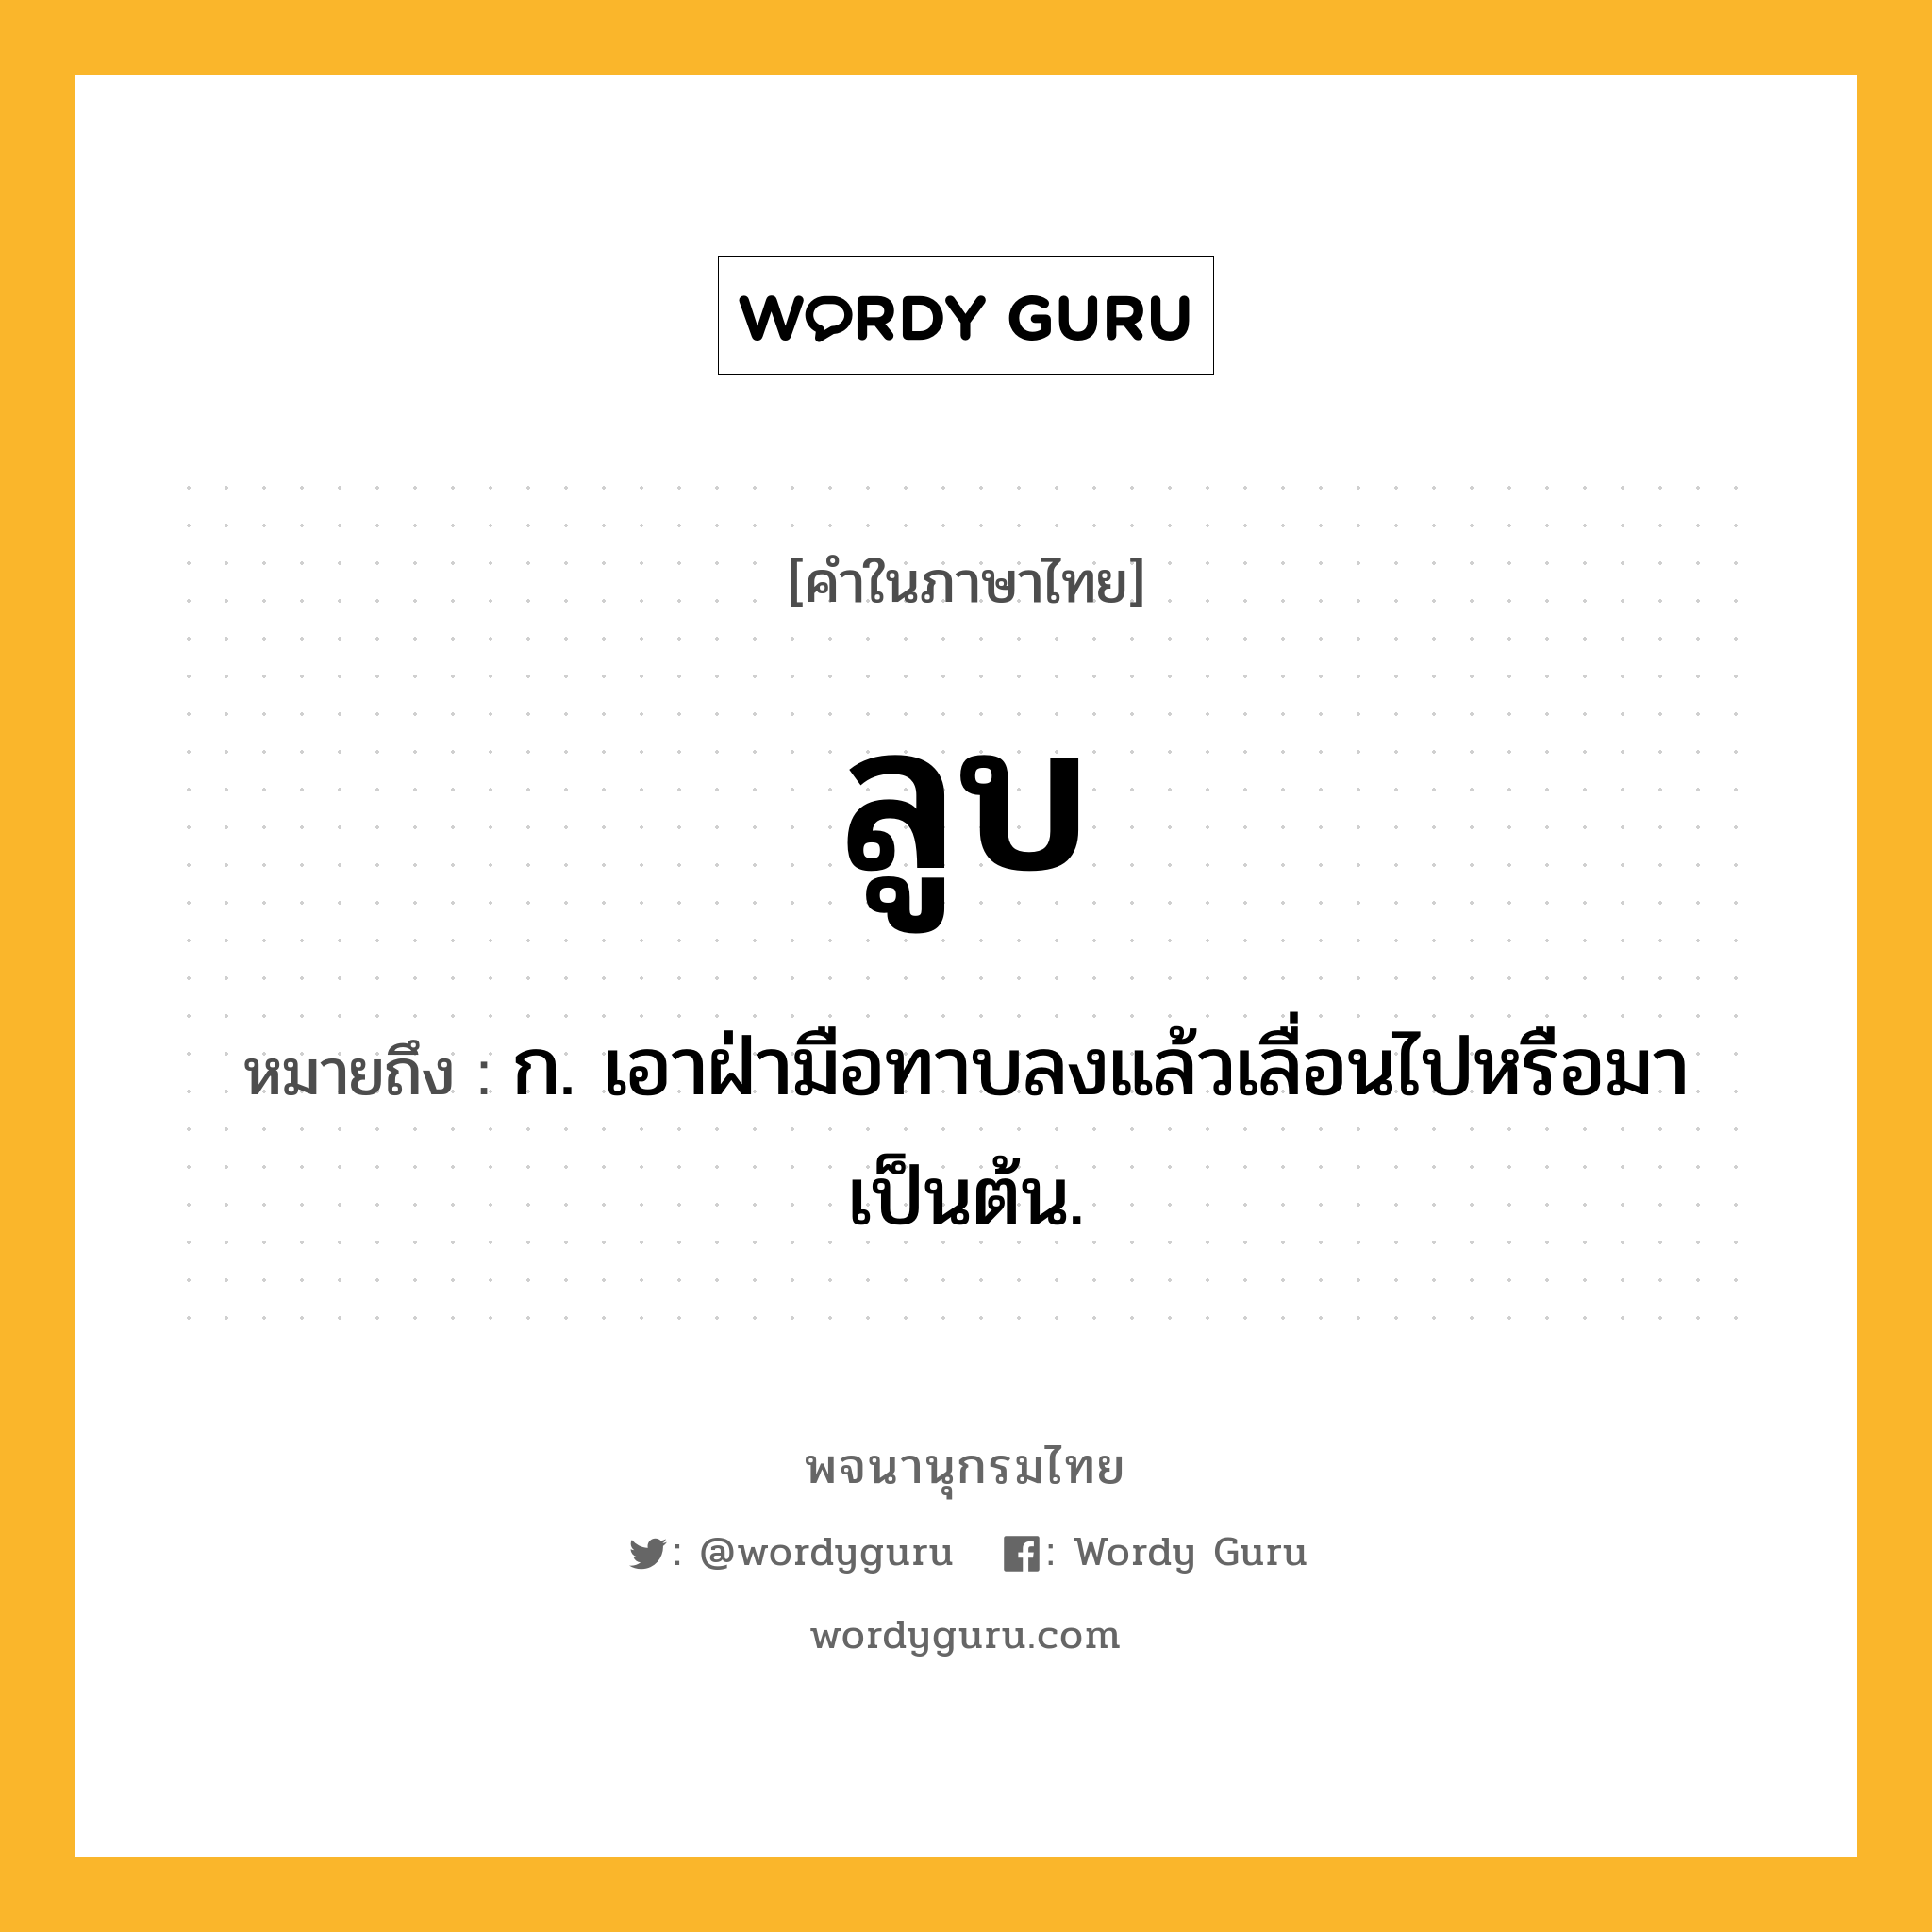 ลูบ ความหมาย หมายถึงอะไร?, คำในภาษาไทย ลูบ หมายถึง ก. เอาฝ่ามือทาบลงแล้วเลื่อนไปหรือมาเป็นต้น.